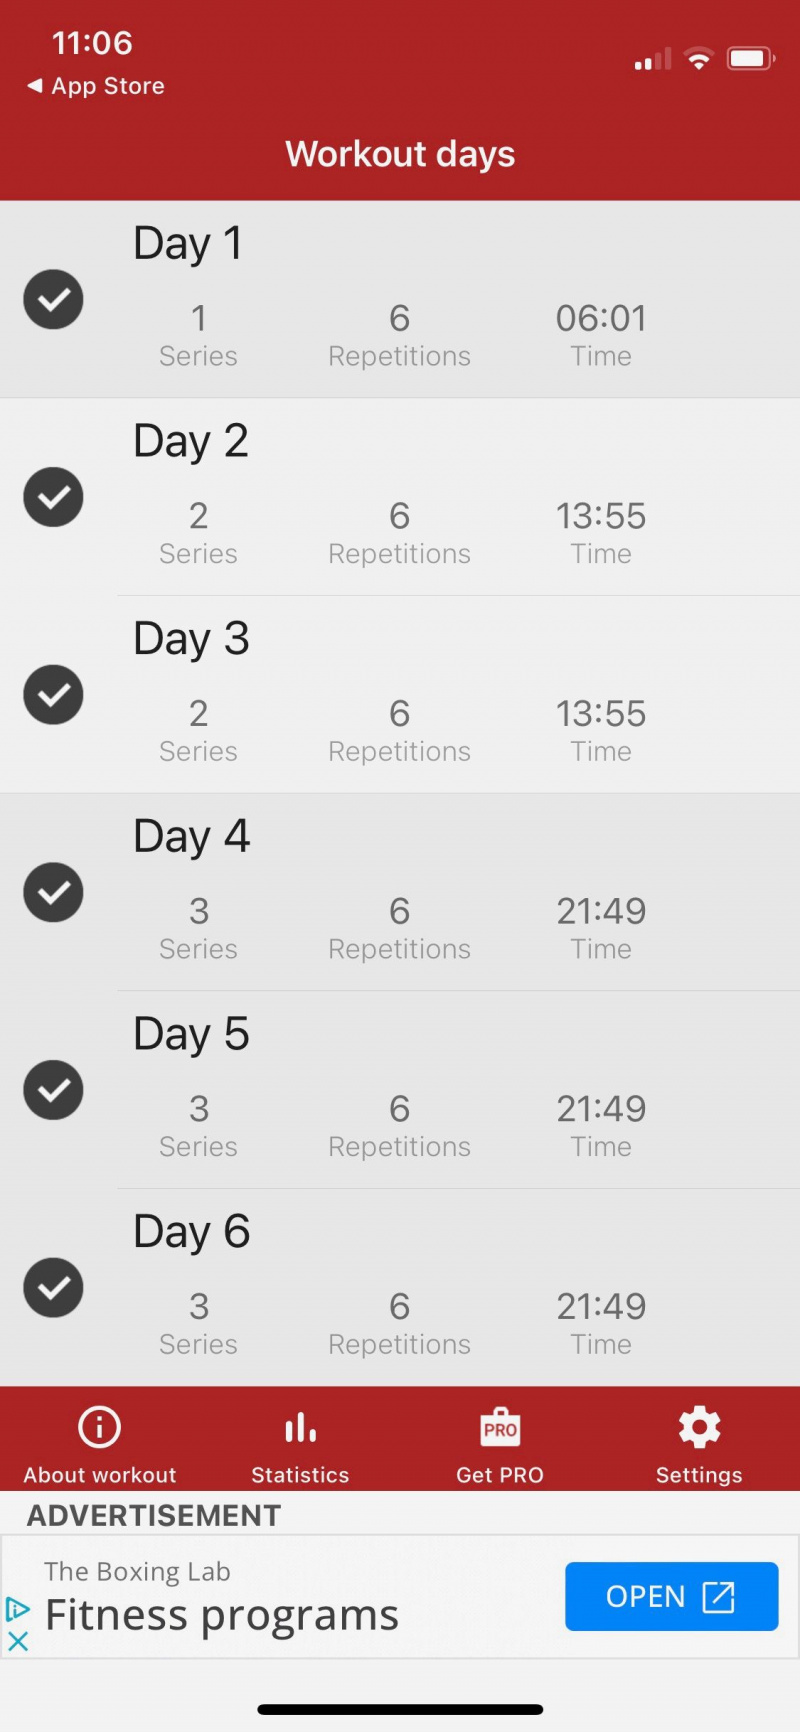   Captura de pantalla de la aplicación A6W que muestra los días de entrenamiento